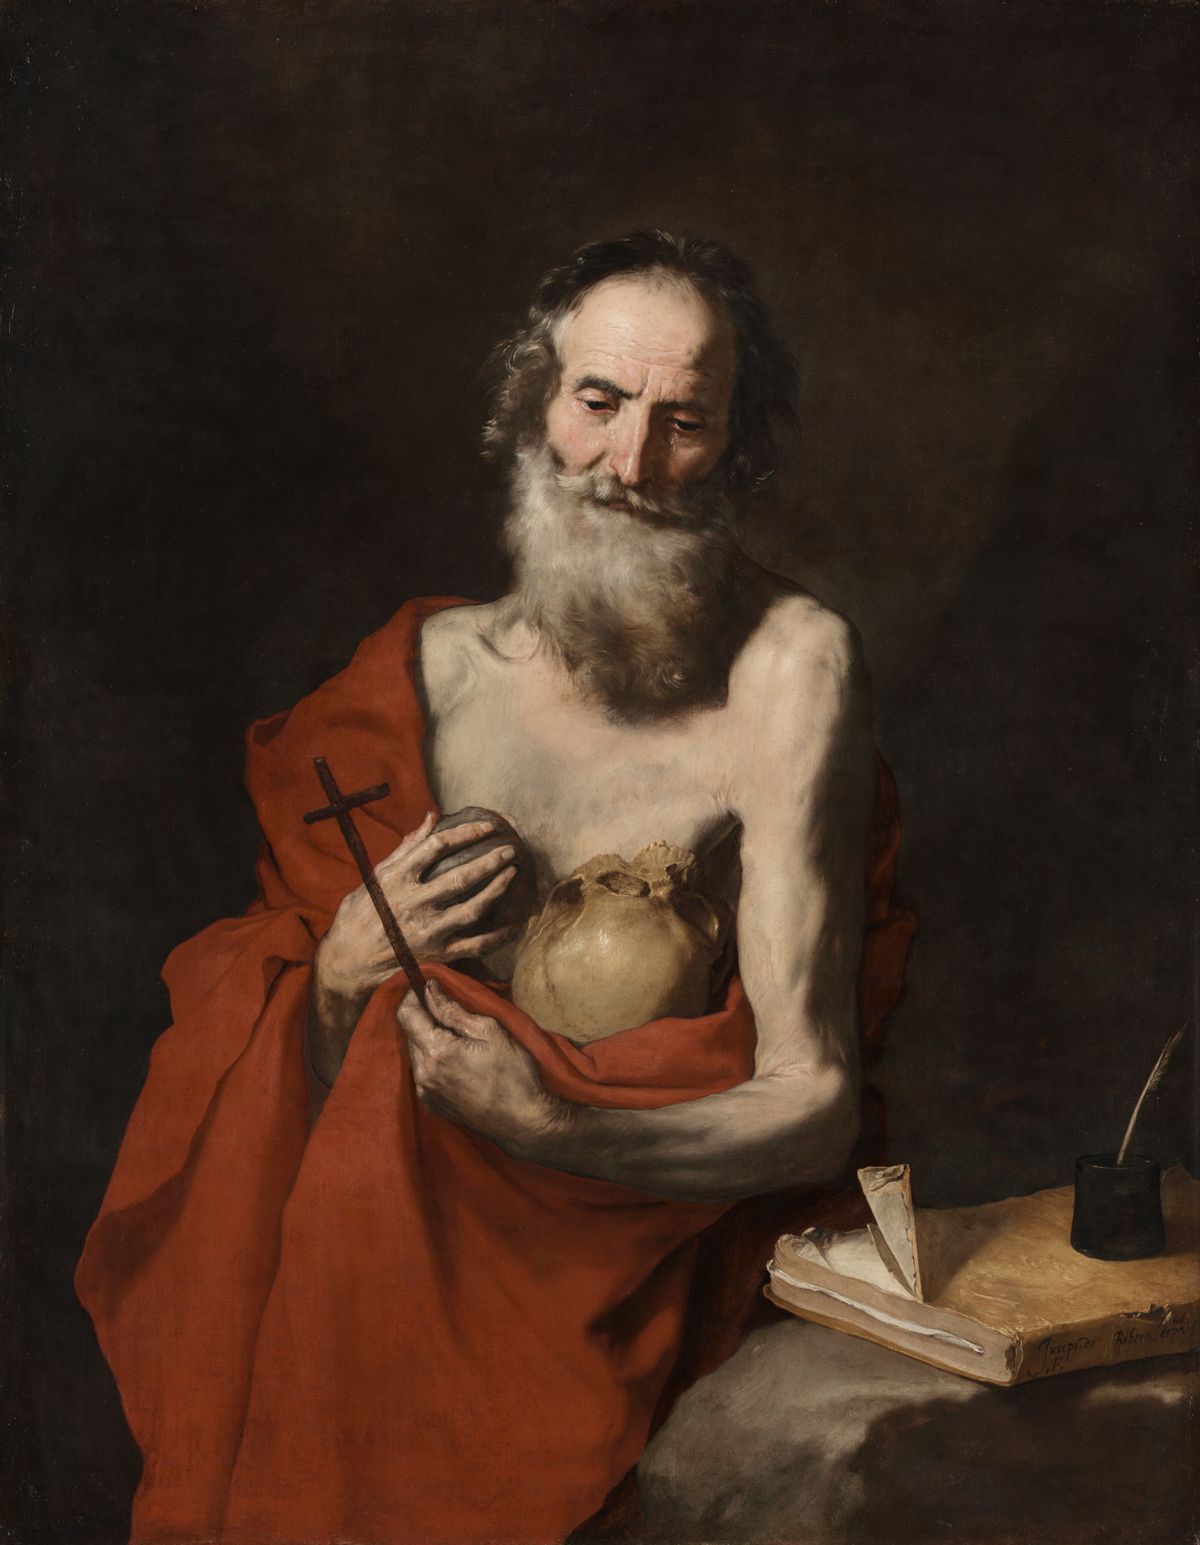 Saint Jerome (1638-1640)
by Jusepe de Ribera - Public Domain Catholic Painting